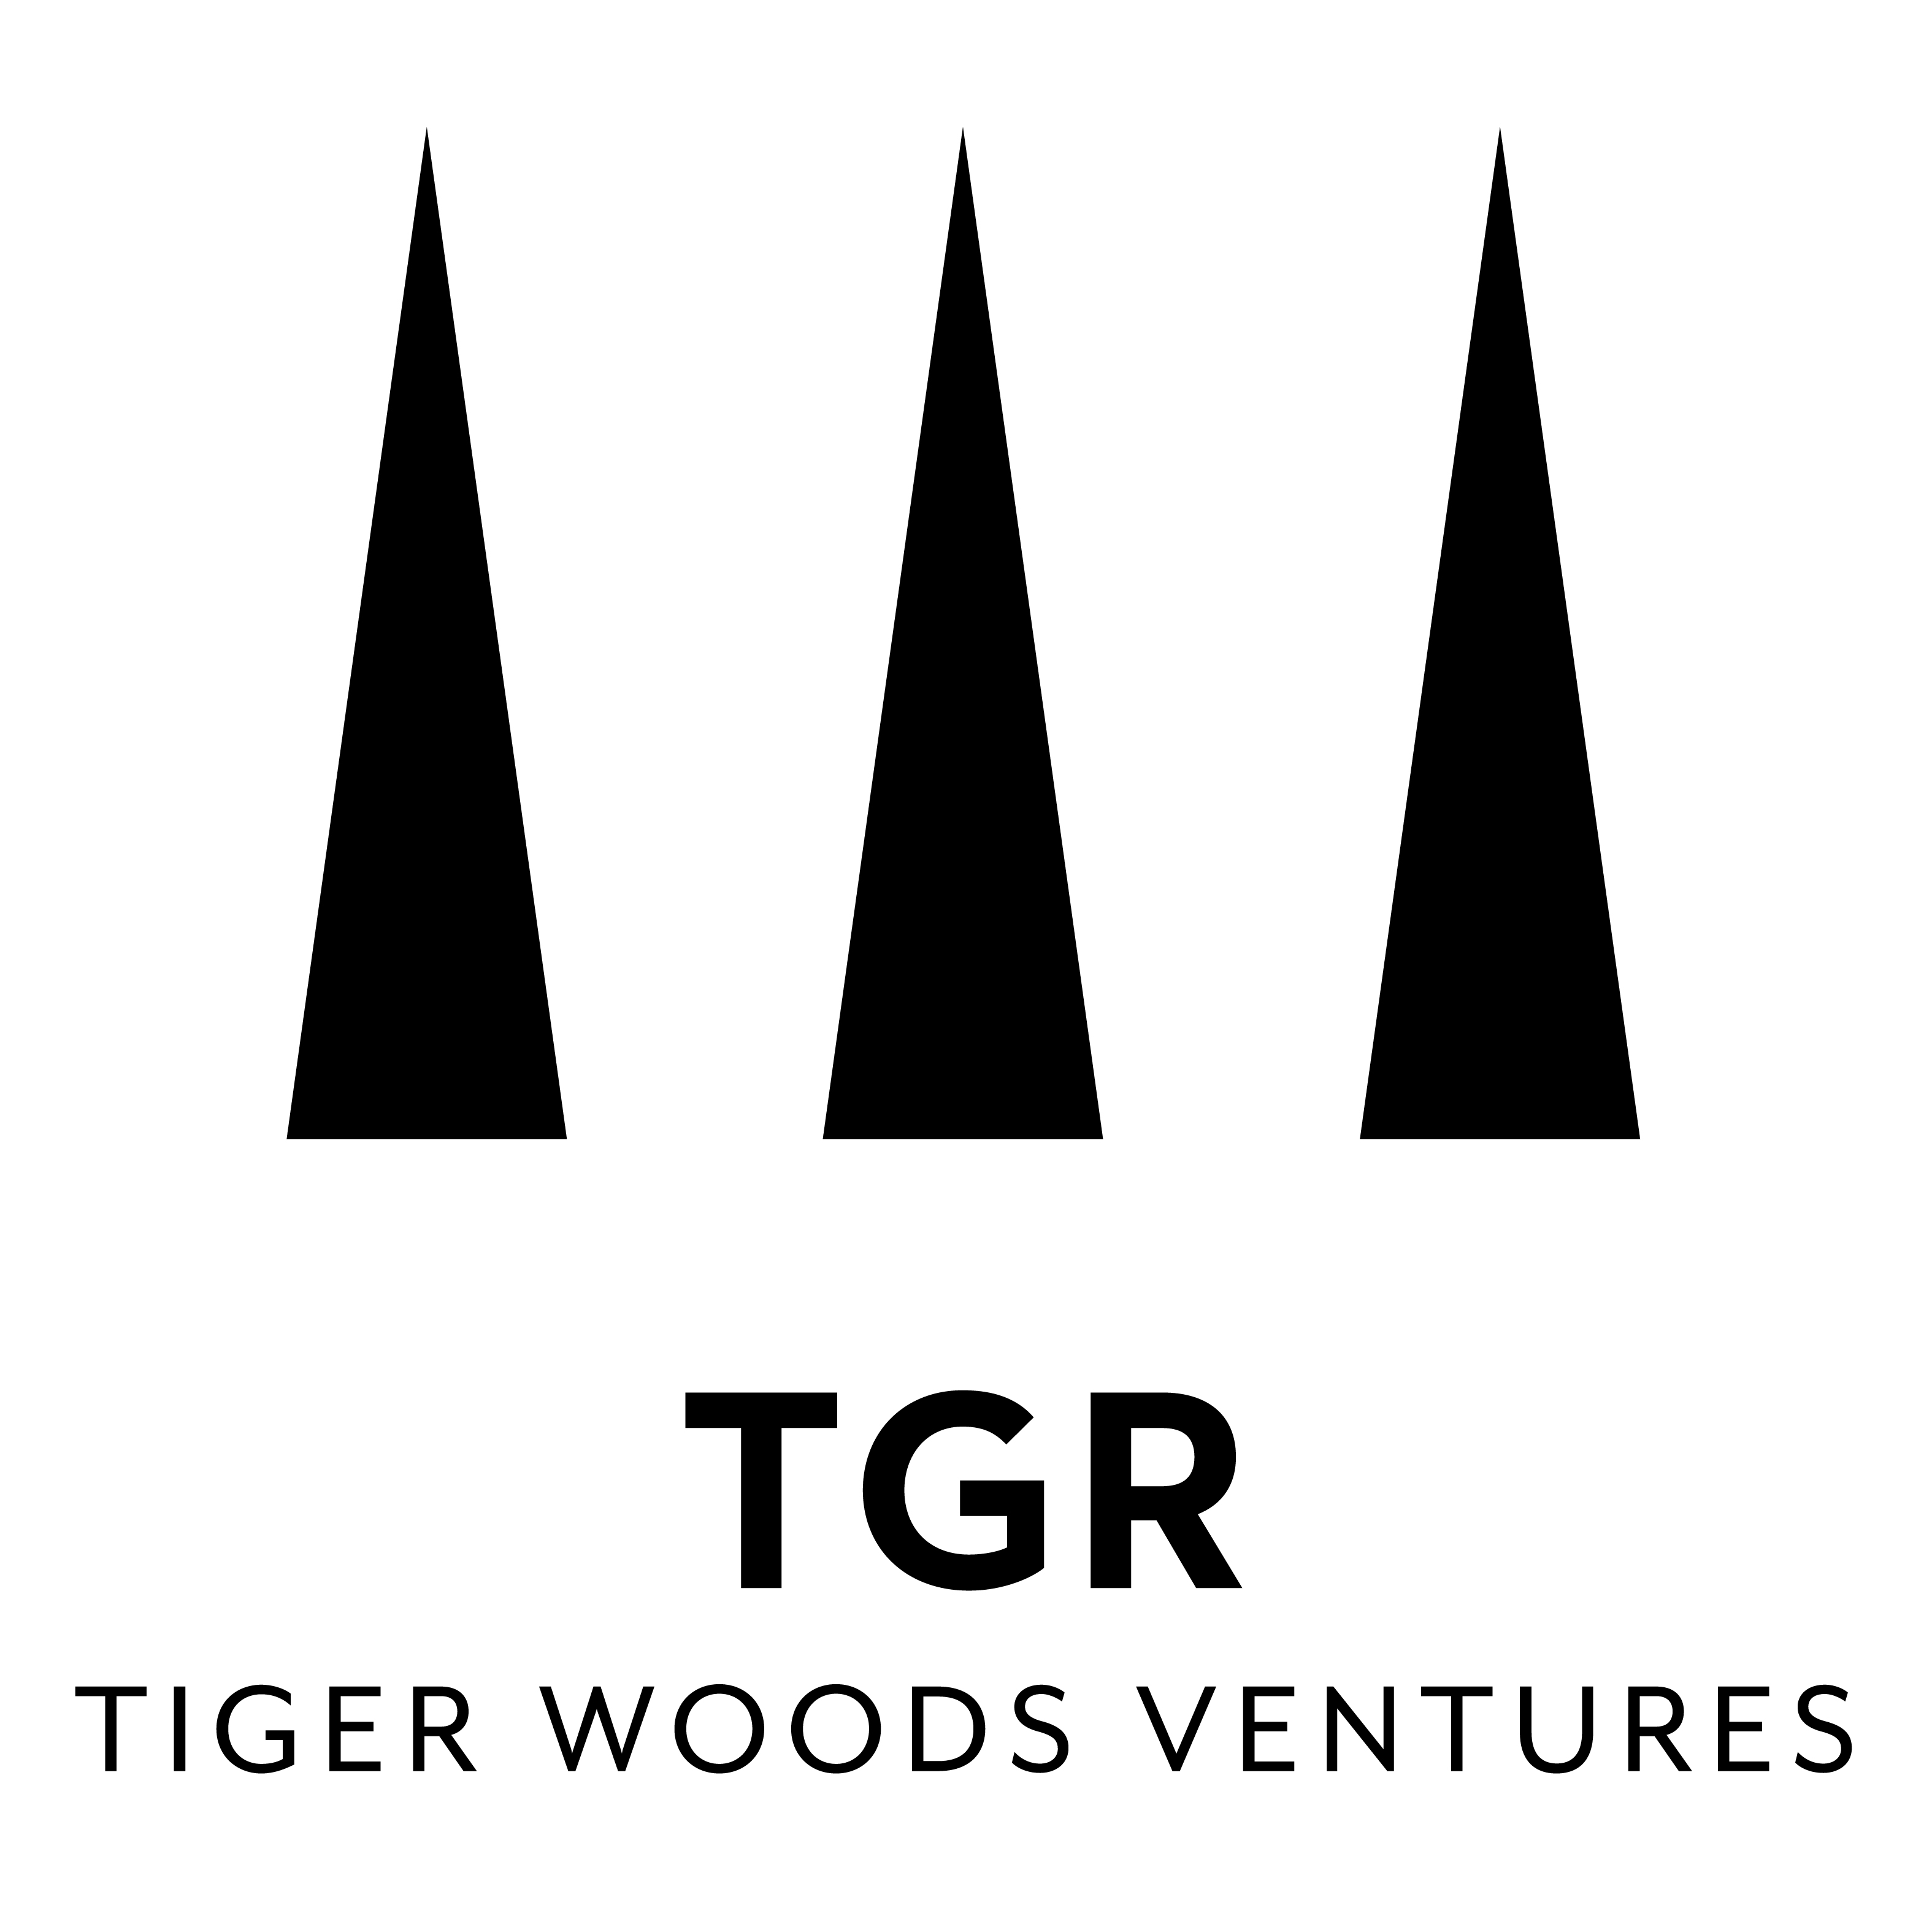 TGR, Tiger Woods Ventures